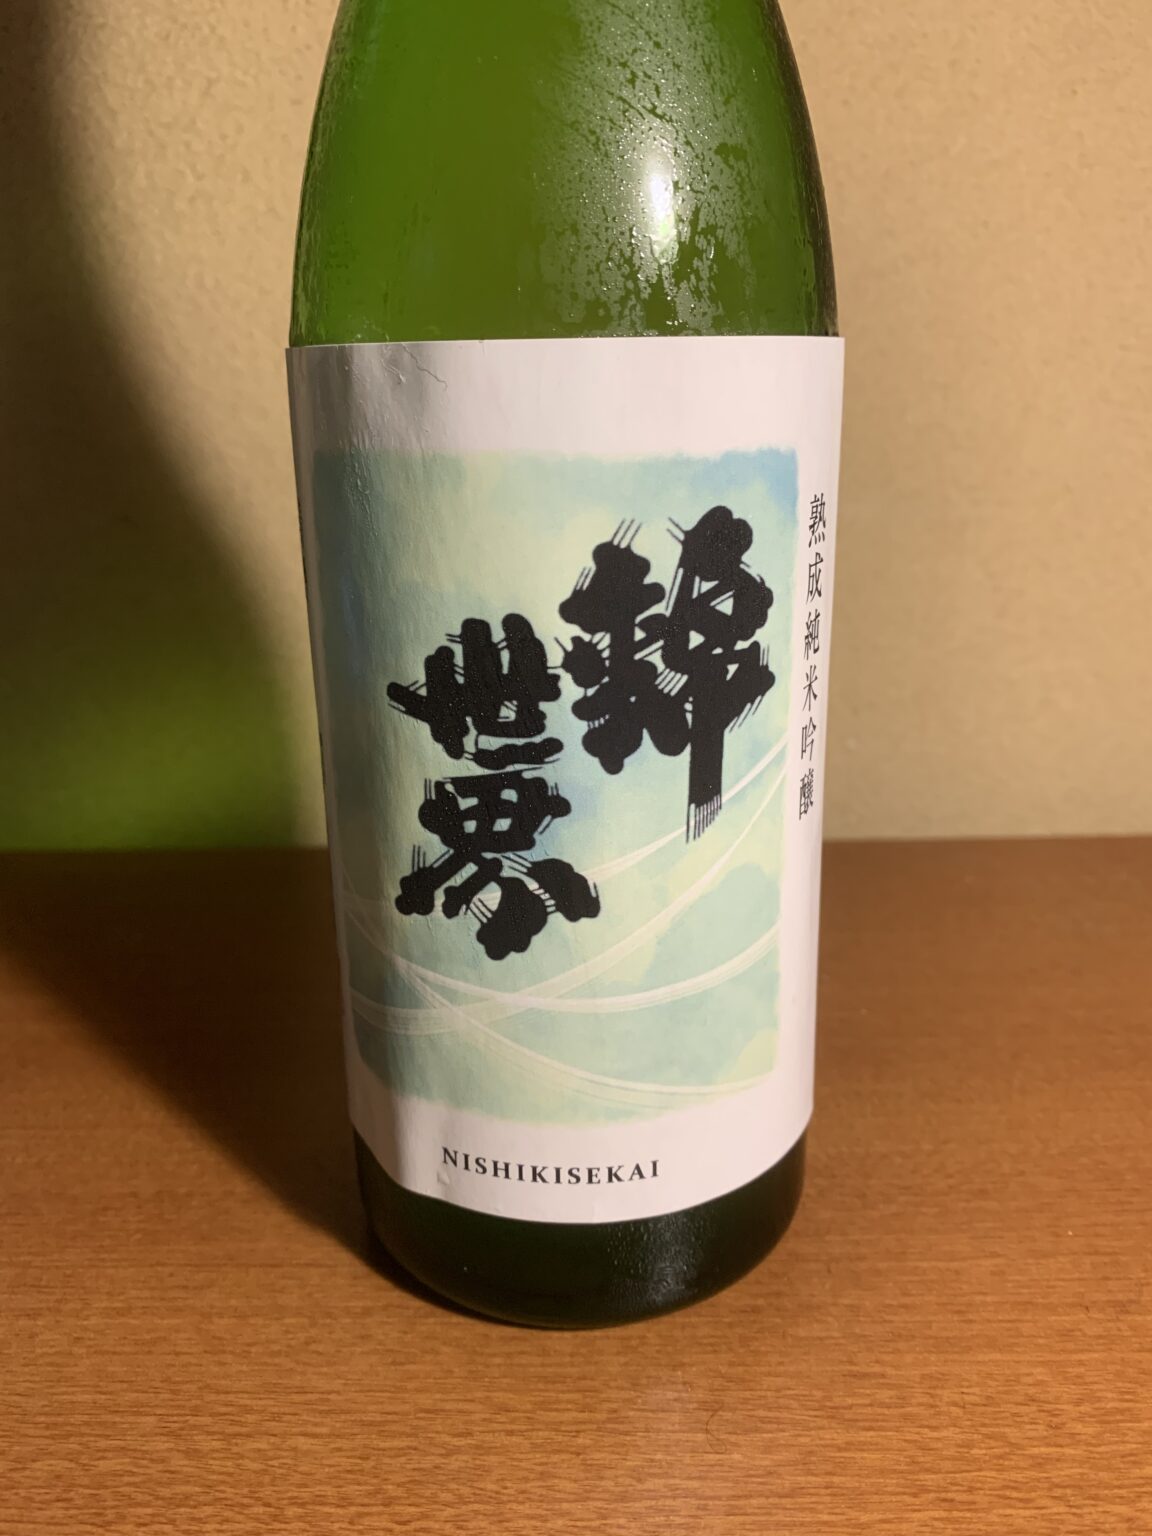 防府の日本酒『錦世界熟成純米吟醸』は風格ある酸味とキレが素晴らしい